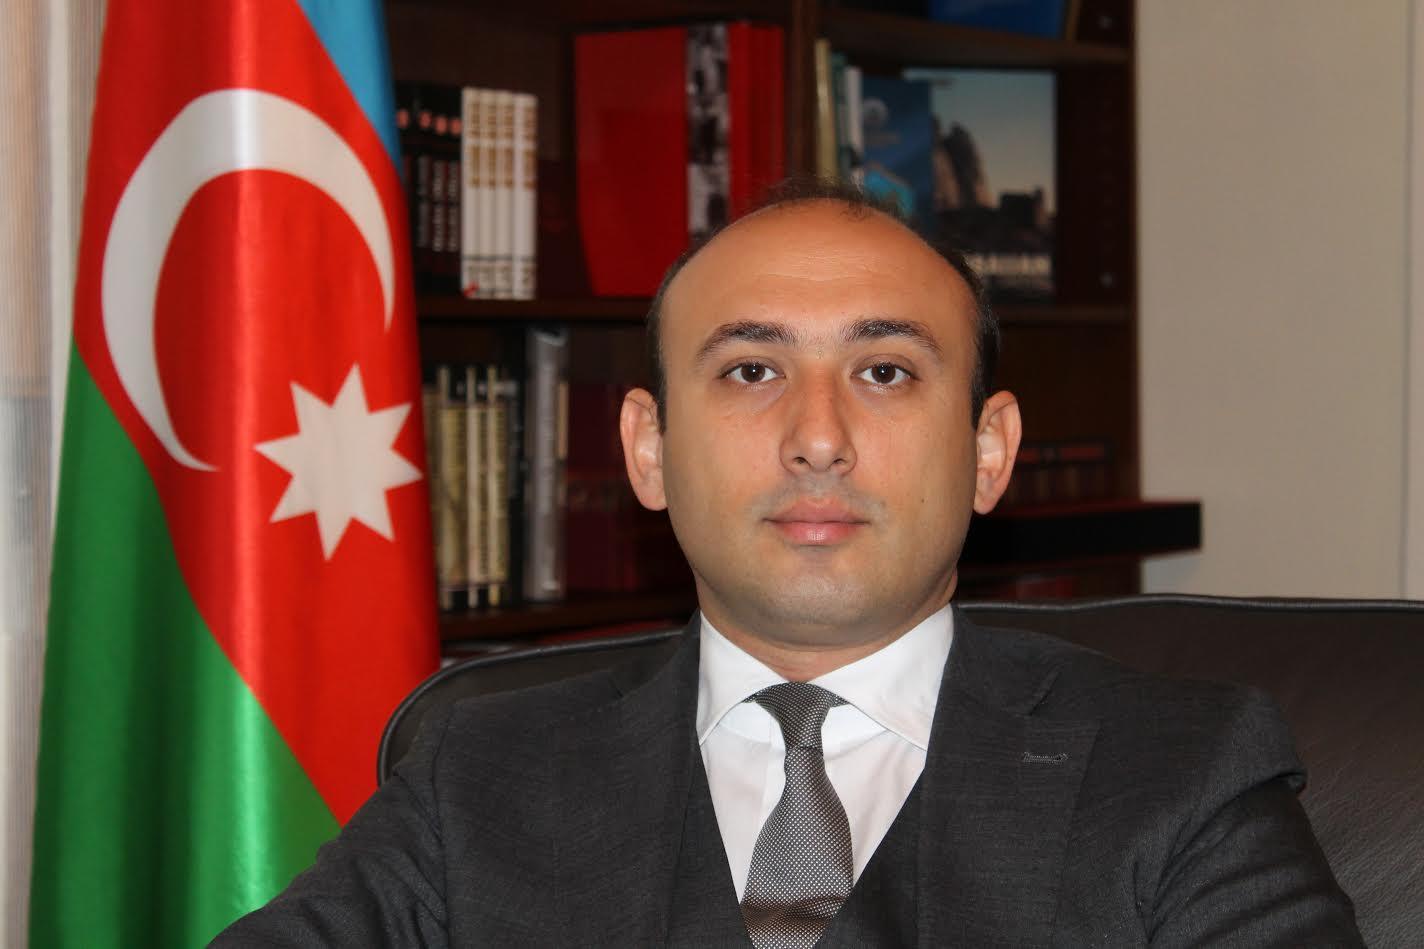 Посол Азербайджана в Италии: урегулирование конфликта заключается в восстановлении территориальной целостности Азербайджана